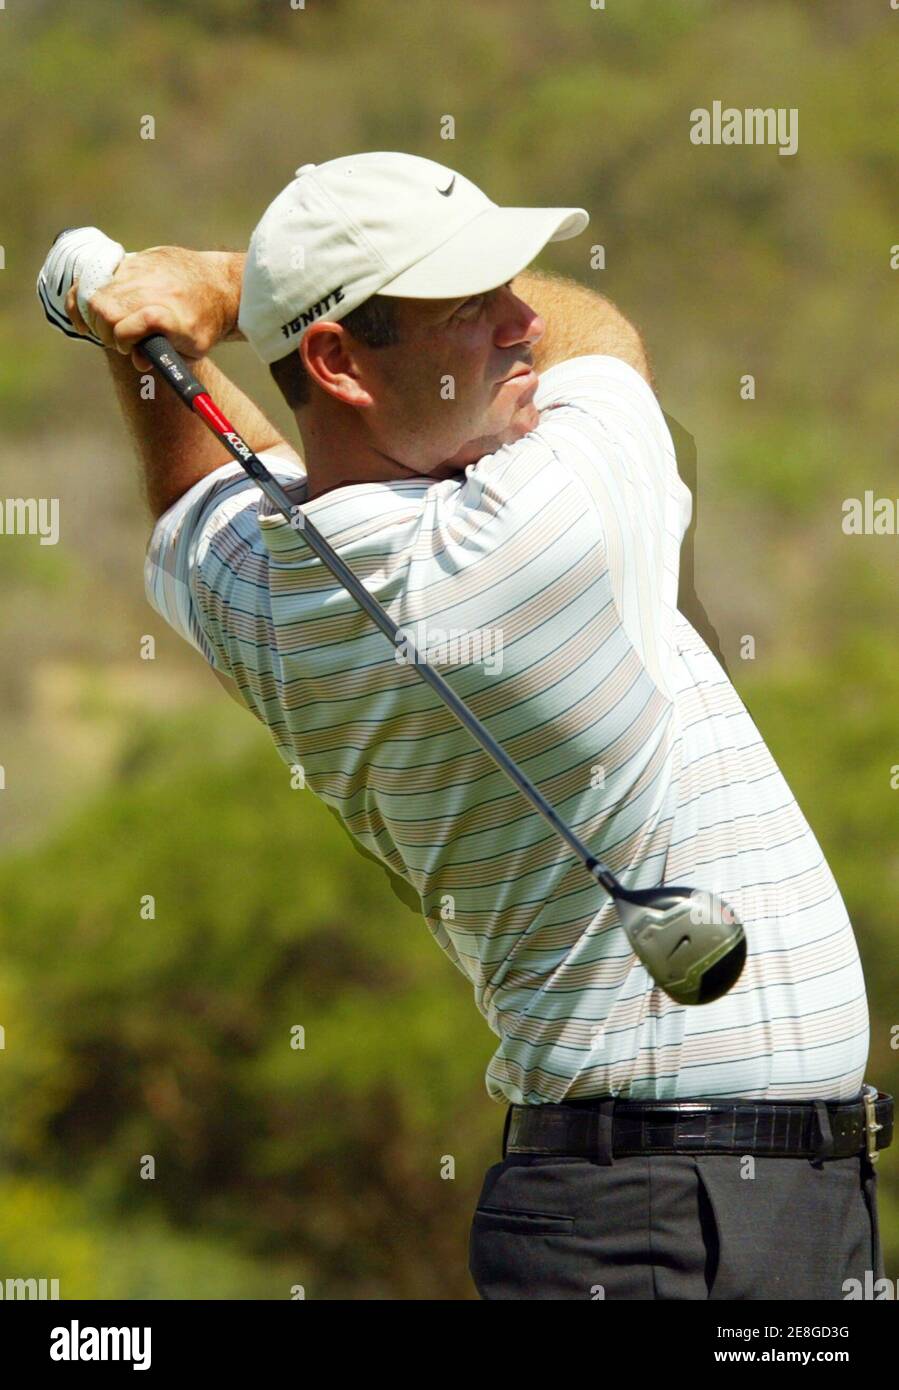 Stewart Cink der USA spielt eine Aufnahme während des ersten Tages der $ 4 Millionen Sun City Golf Challenge in Sun City, westlich von Johannesburg in Südafrika 1. Dezember 2005. Cink fertig in einem über 73. REUTERS/Juda Ngwenya Stockfoto